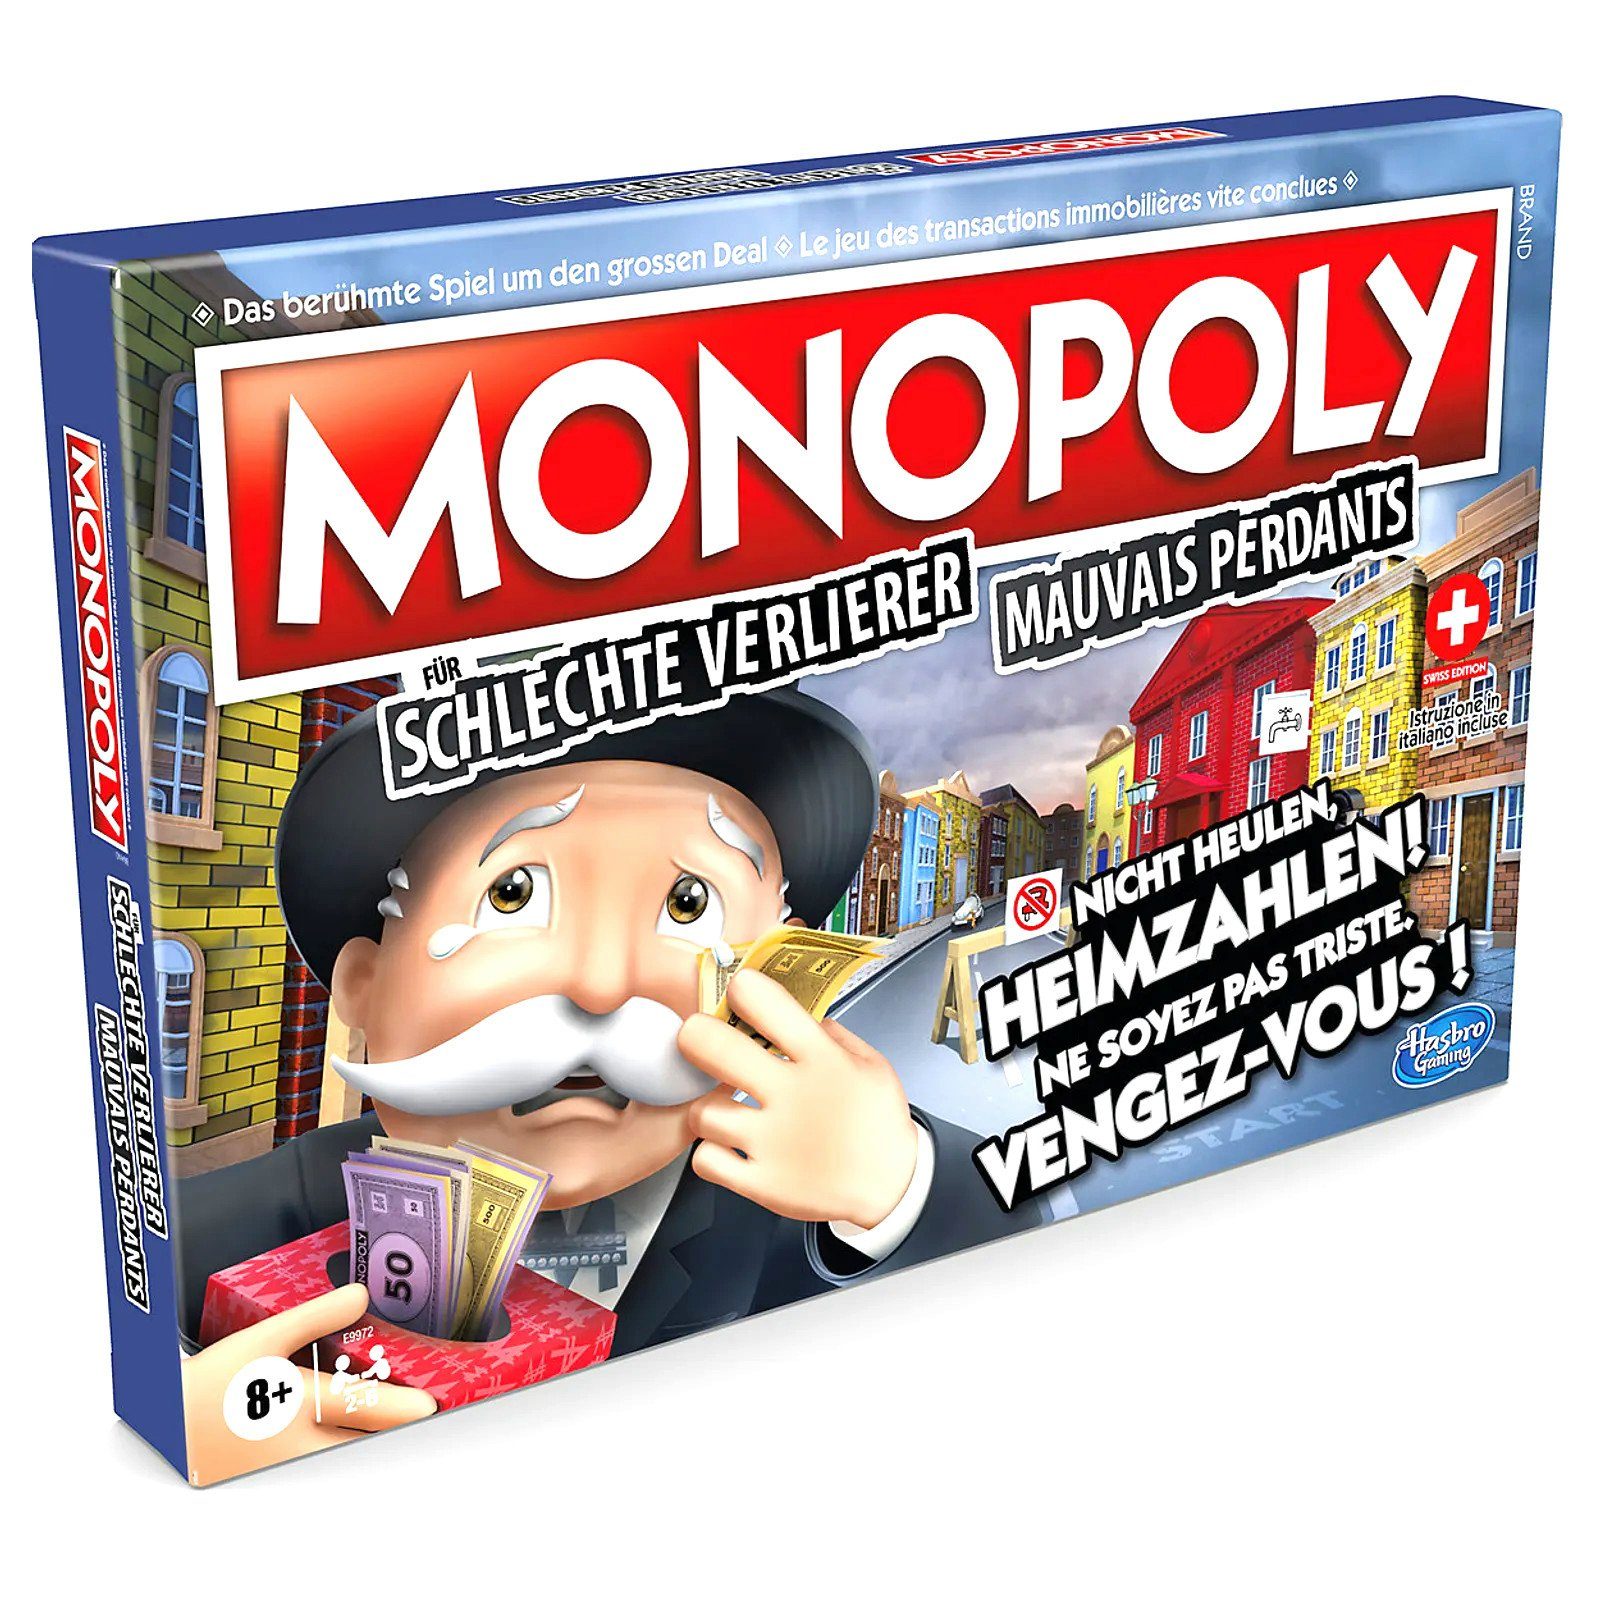 Verlierer schlechte Monopoly (deutsch/französisch) Hasbro Spiel, Für Brettspiel -